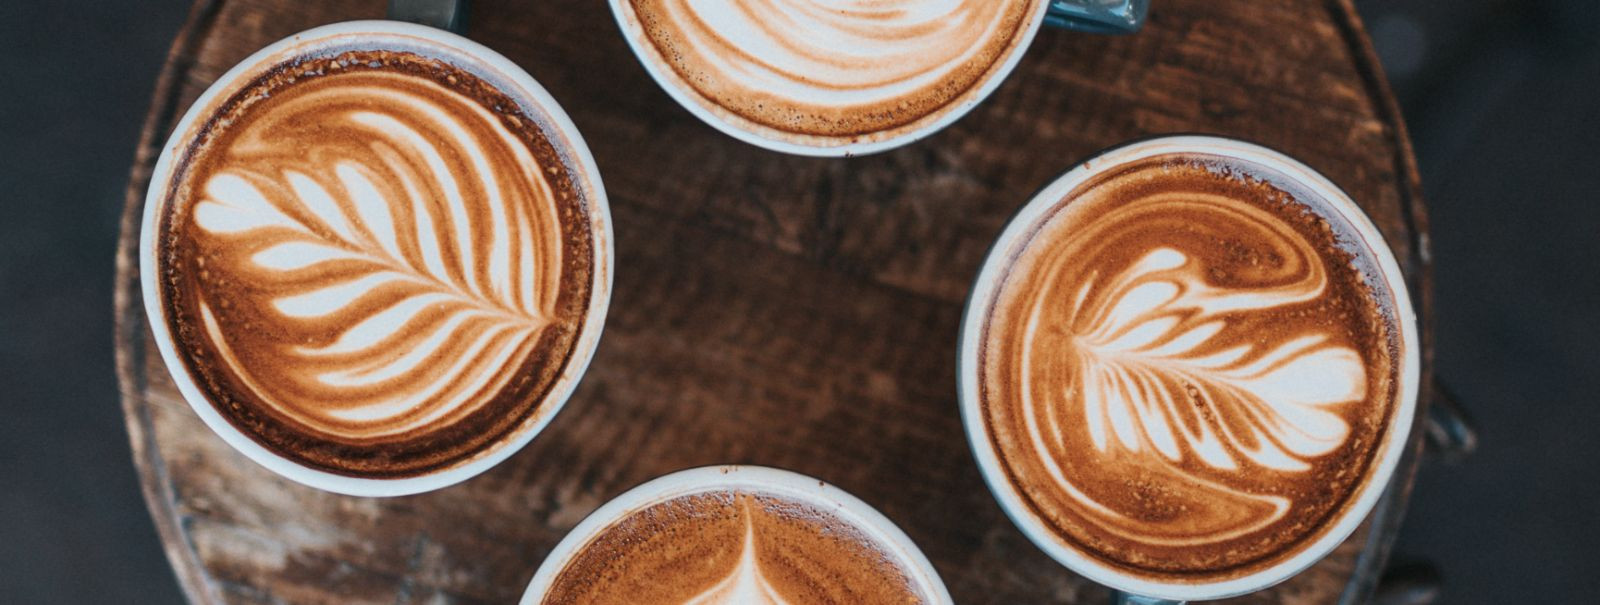 COFFEE HABITS OÜs usume, et suurepärane päev algab täiusliku kohvitassiga. Alates meie loomisest oleme pühendunud kohvisõpradele ülima pruulimiskogemuse pakkumi